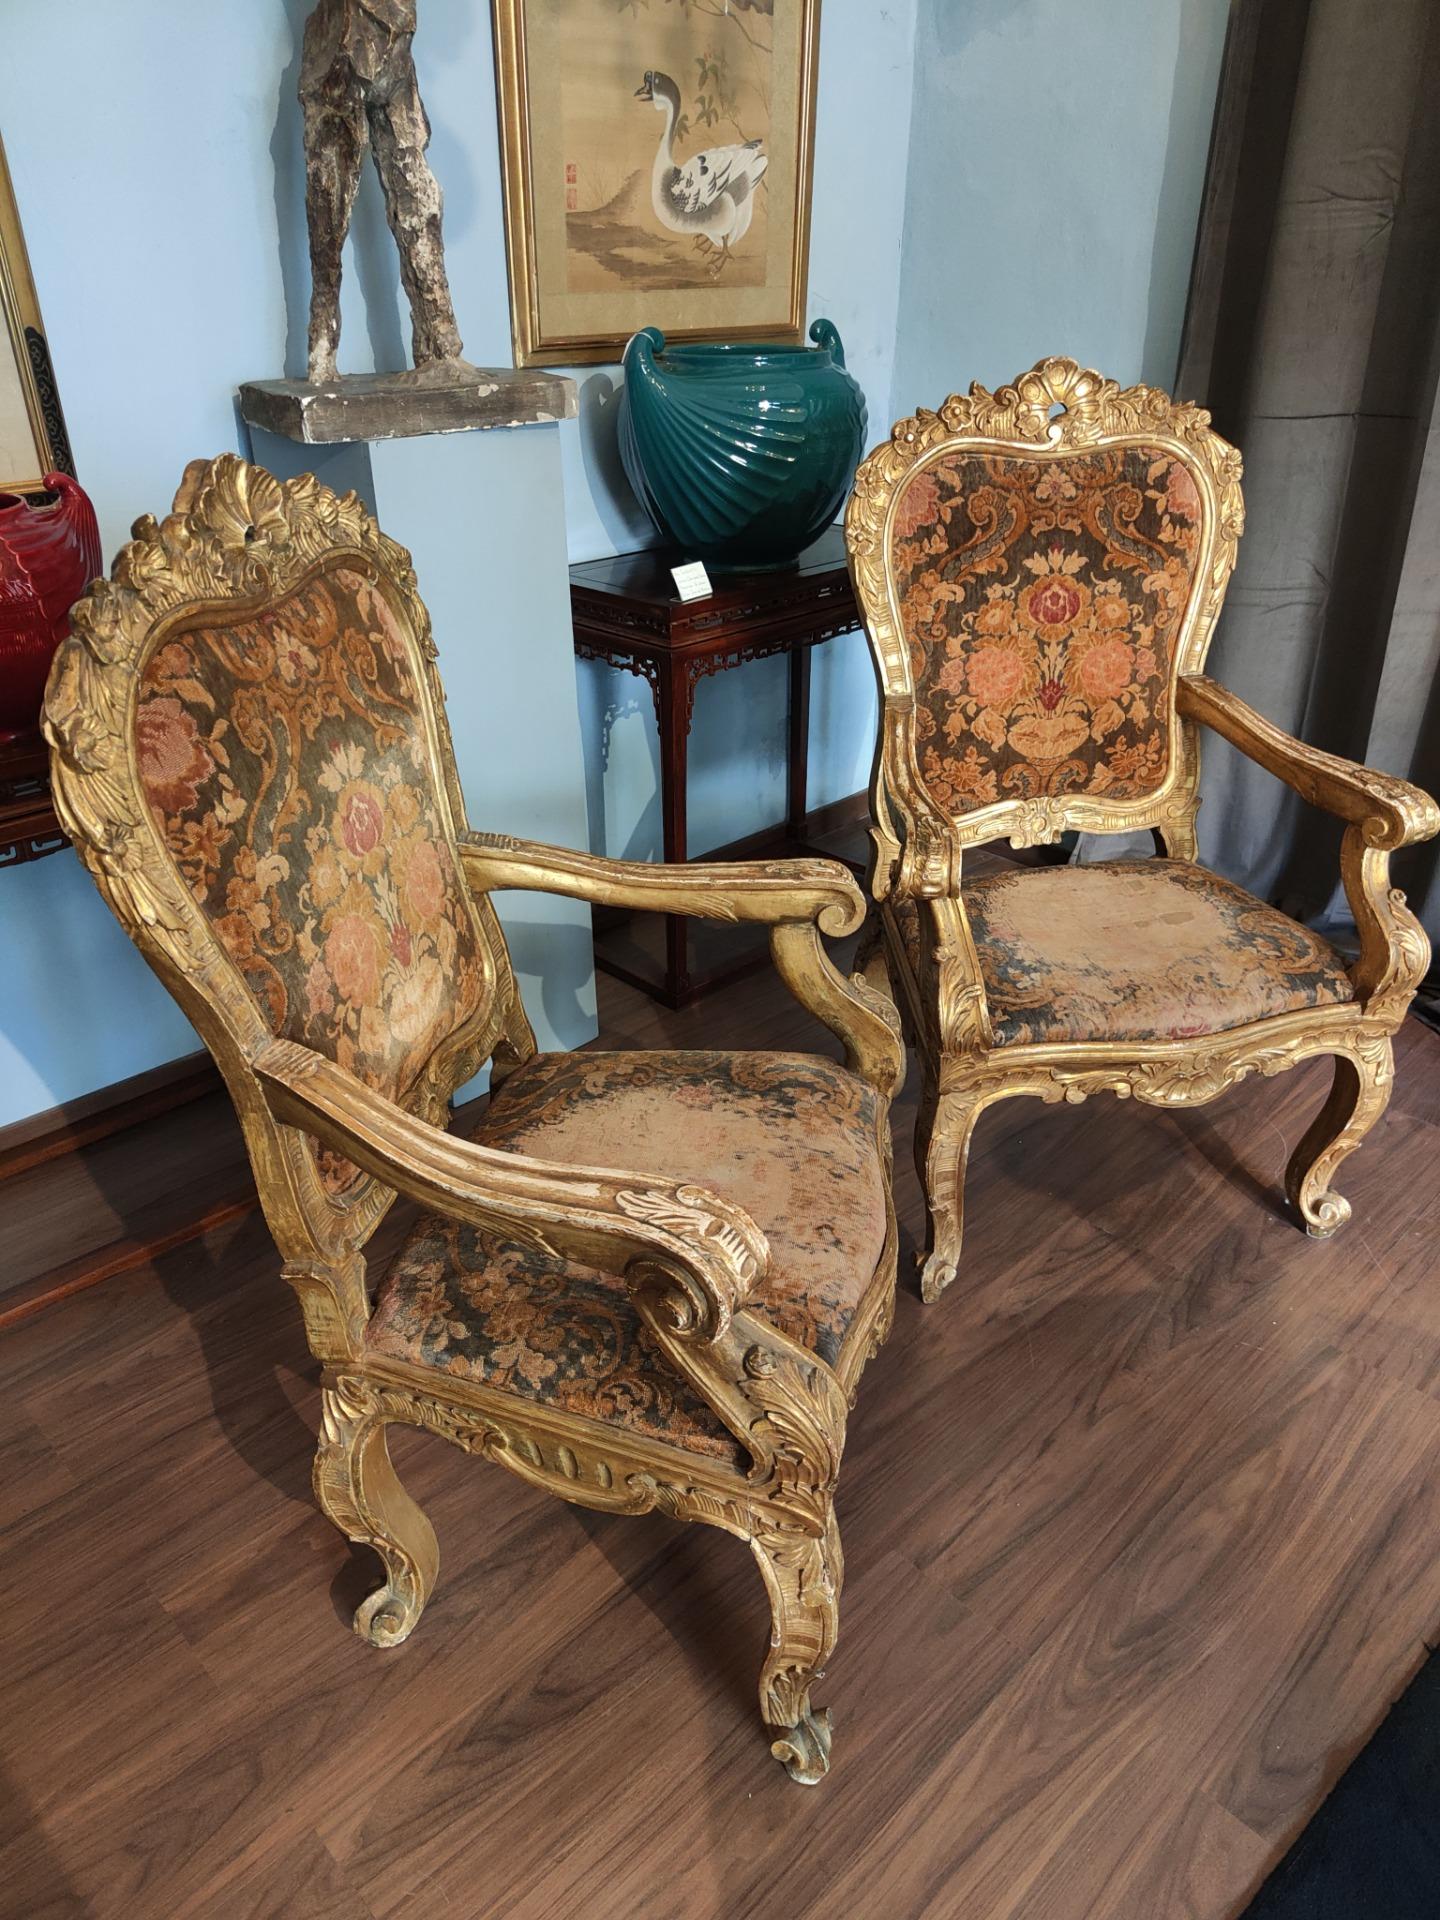 Belle paire de fauteuils, Rome, époque : 600.

Paire de fauteuils en bois doré, de fabrication romaine, finement sculptés de riches motifs floraux et de coquillages. 
La tapisserie est en velours, les tons sont chauds, allant des bruns aux oranges